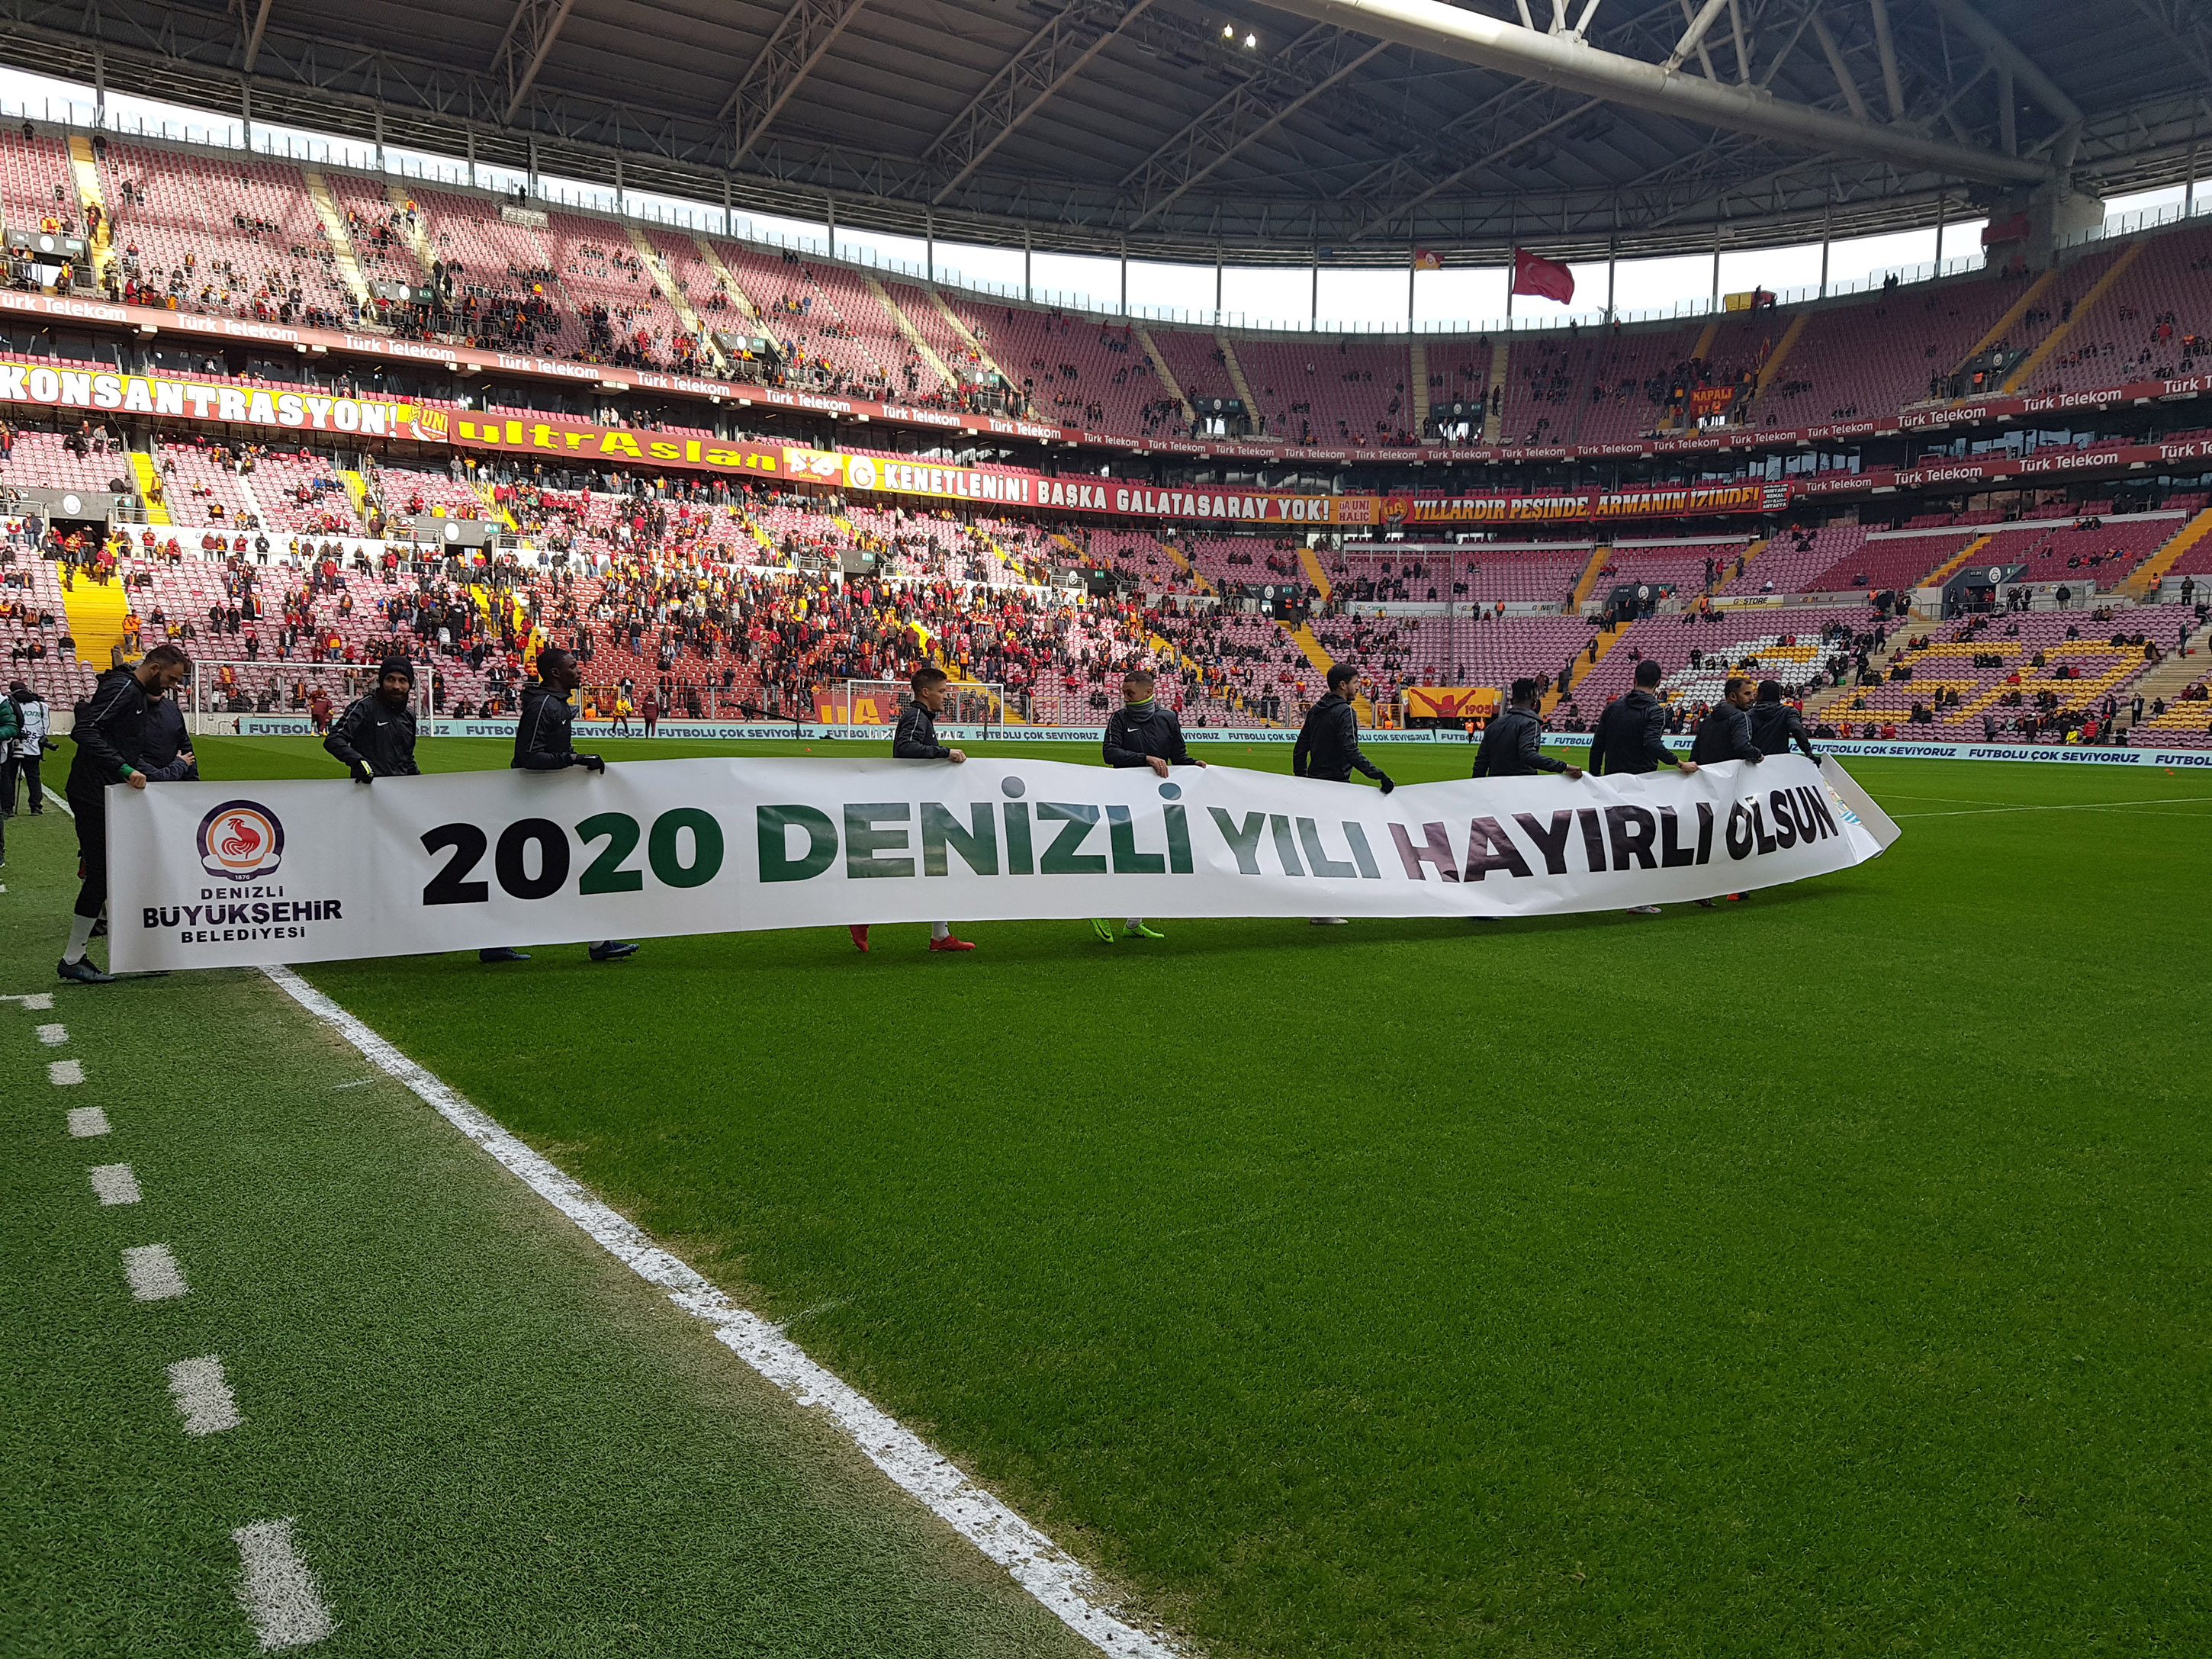 2020 Denizli Yılı, Süper Lig'de